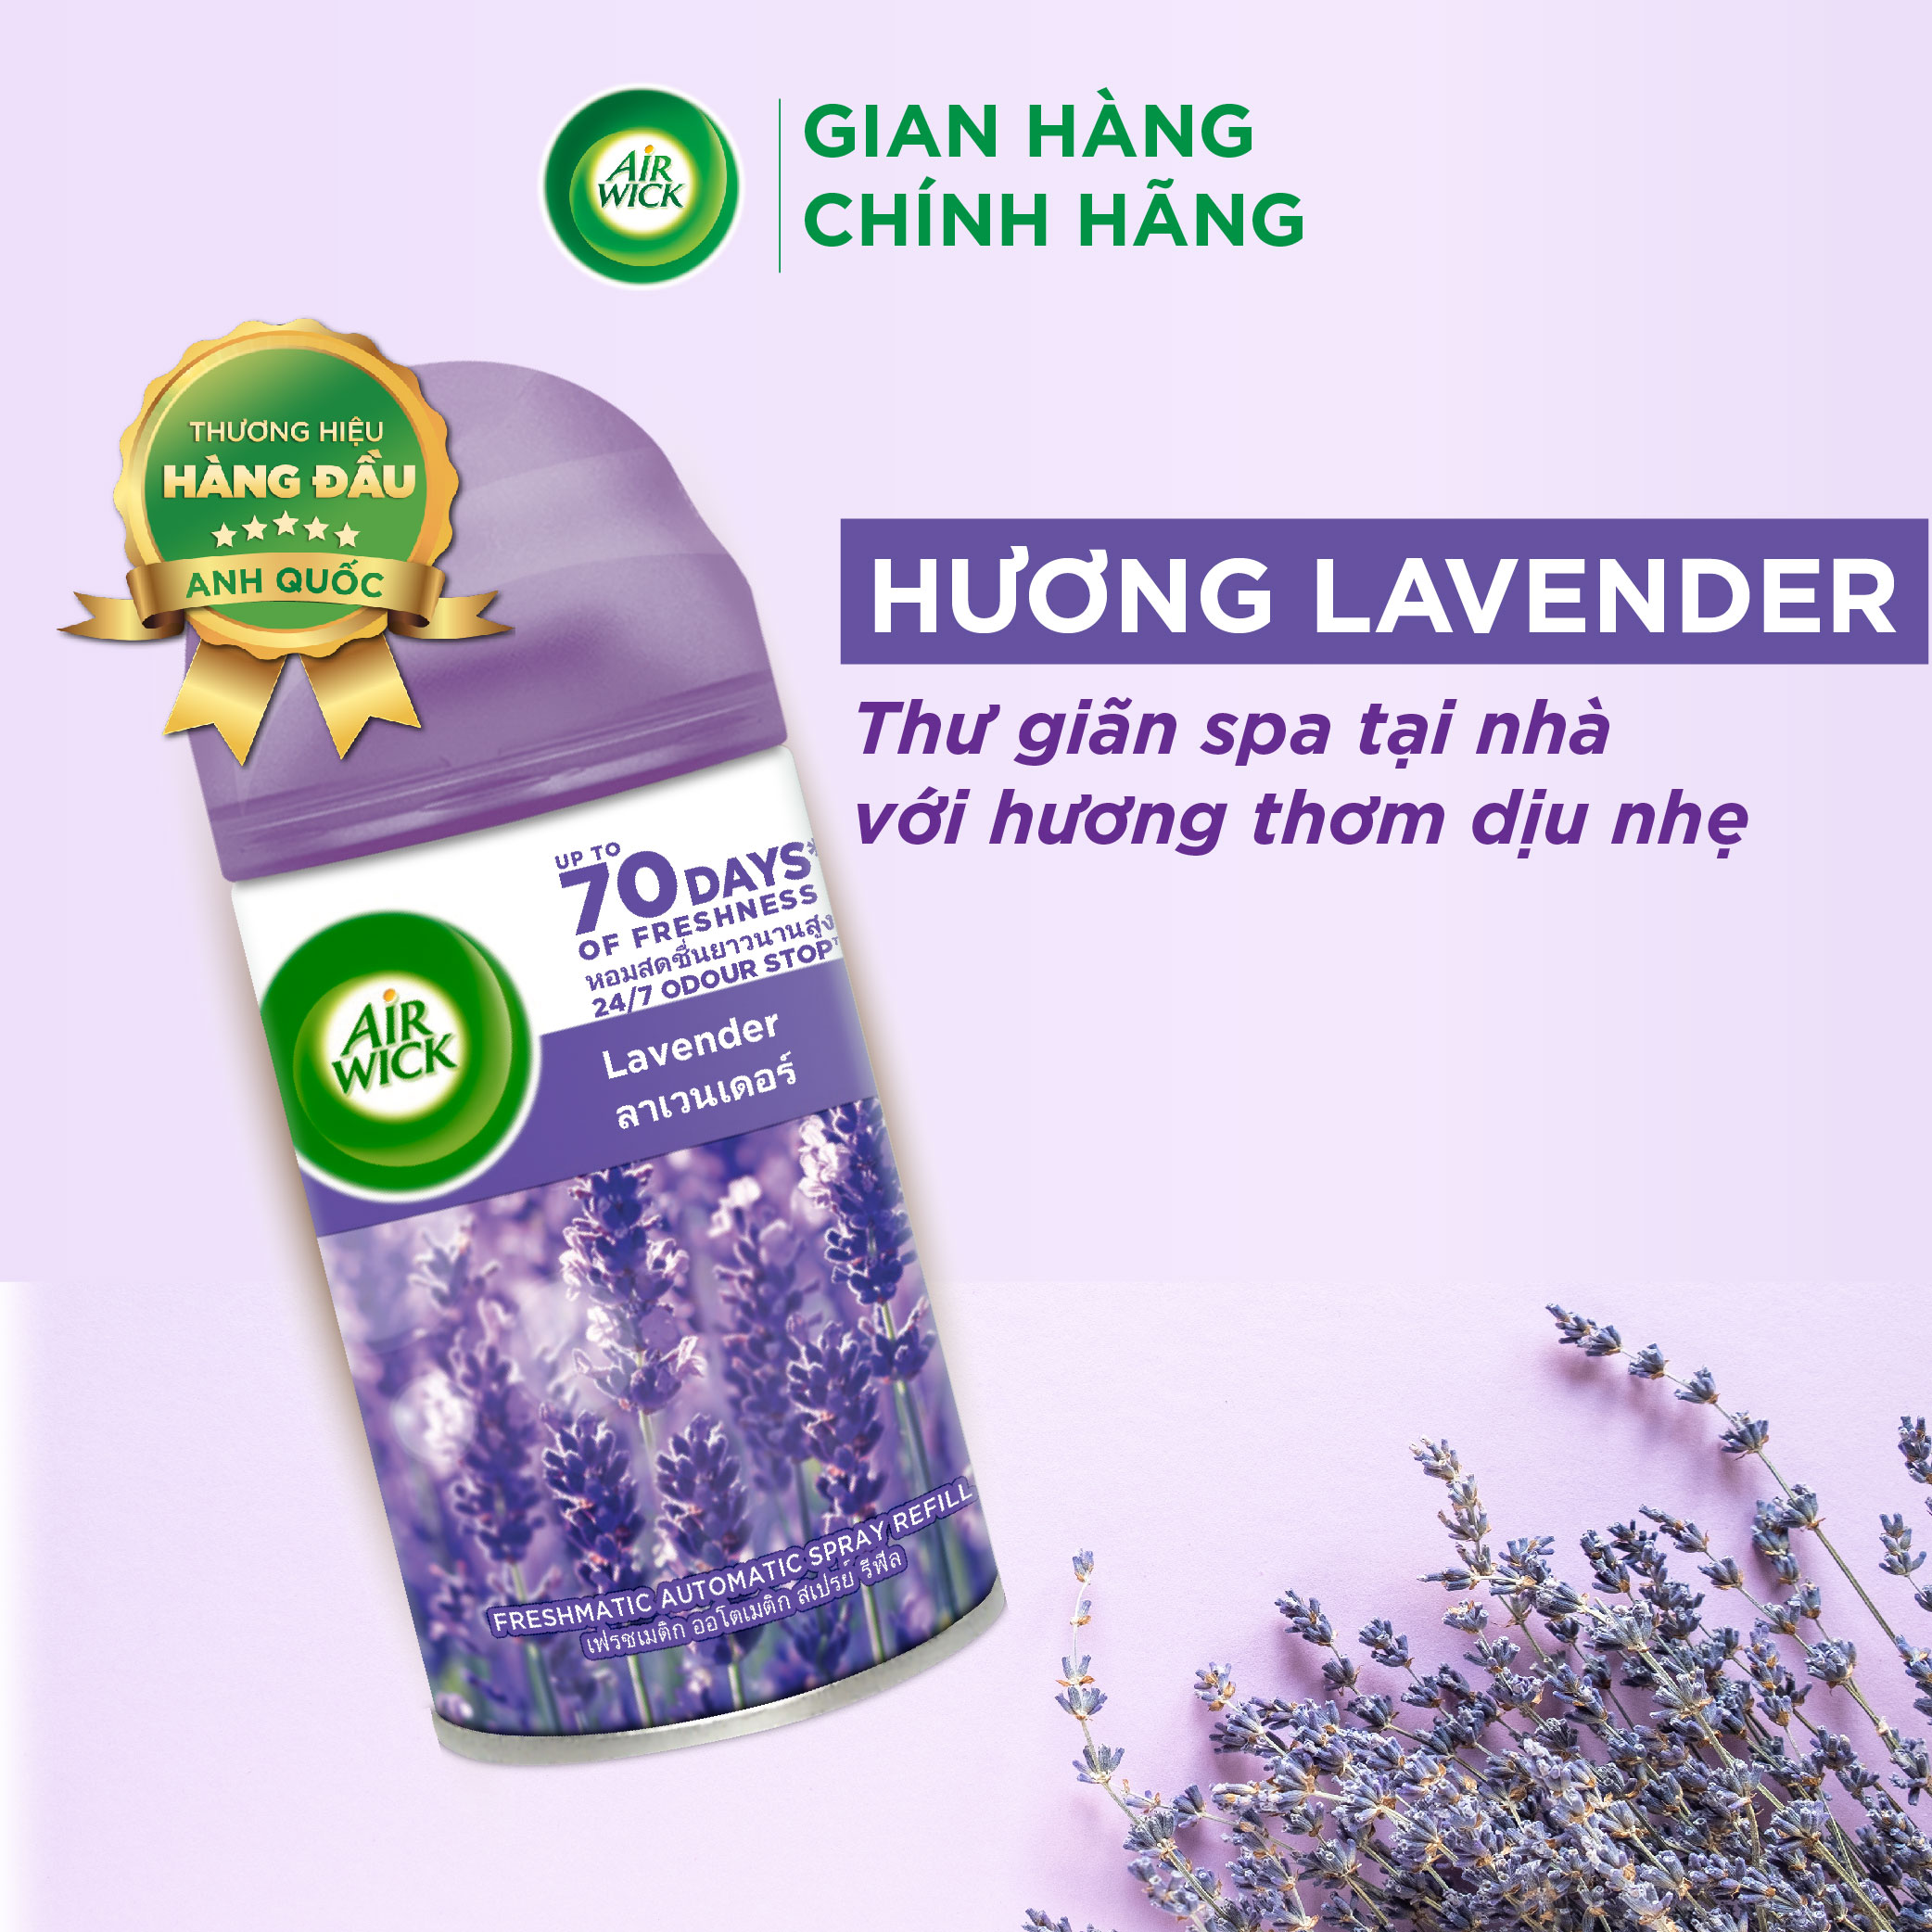 Lõi máy xịt thơm phòng tự động hương Lavender AIRWICK, hương thơm dịu nhẹ, thư giãn, giúp giảm căng thẳng 250ml